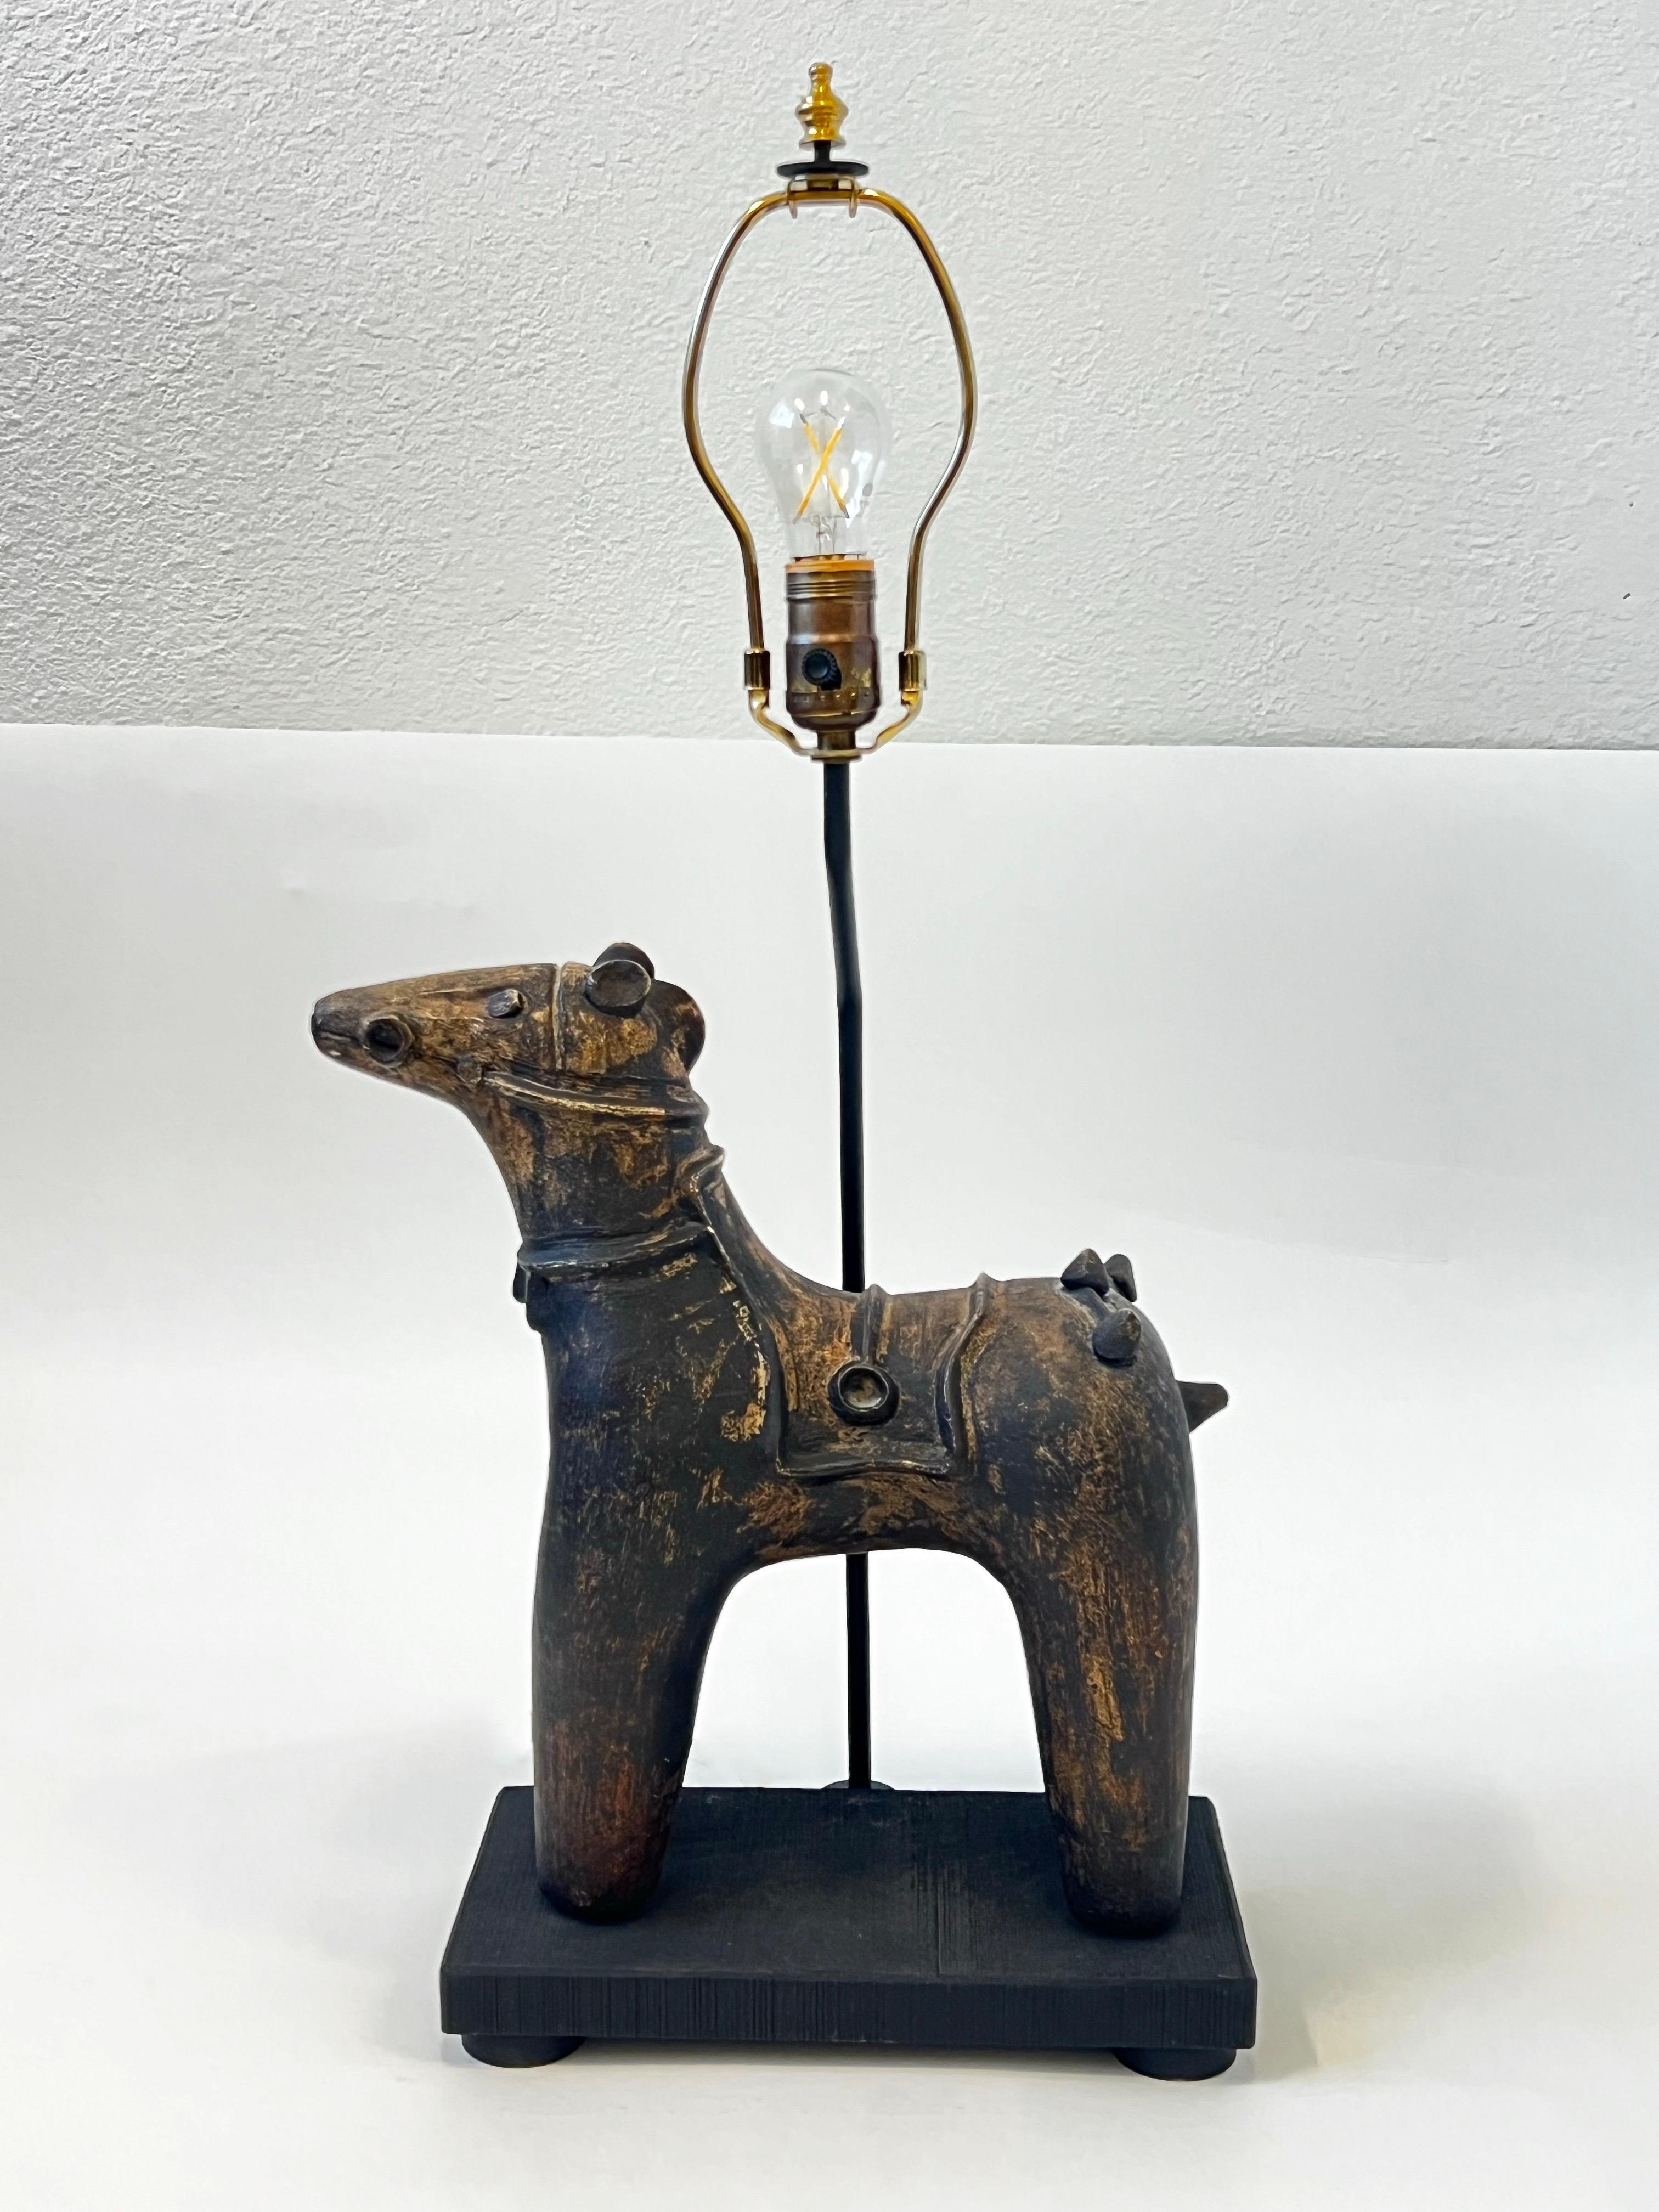 Keramikpferd-Tischlampe von Frederick Cooper Lamps aus den 1970er Jahren. In schönem Vintage-Zustand.
Die 3-fach Steckdose wurde ersetzt. Es wird eine Glühbirne mit einer maximalen Auflage von 150 Stück benötigt. 

Abmessungen:
13